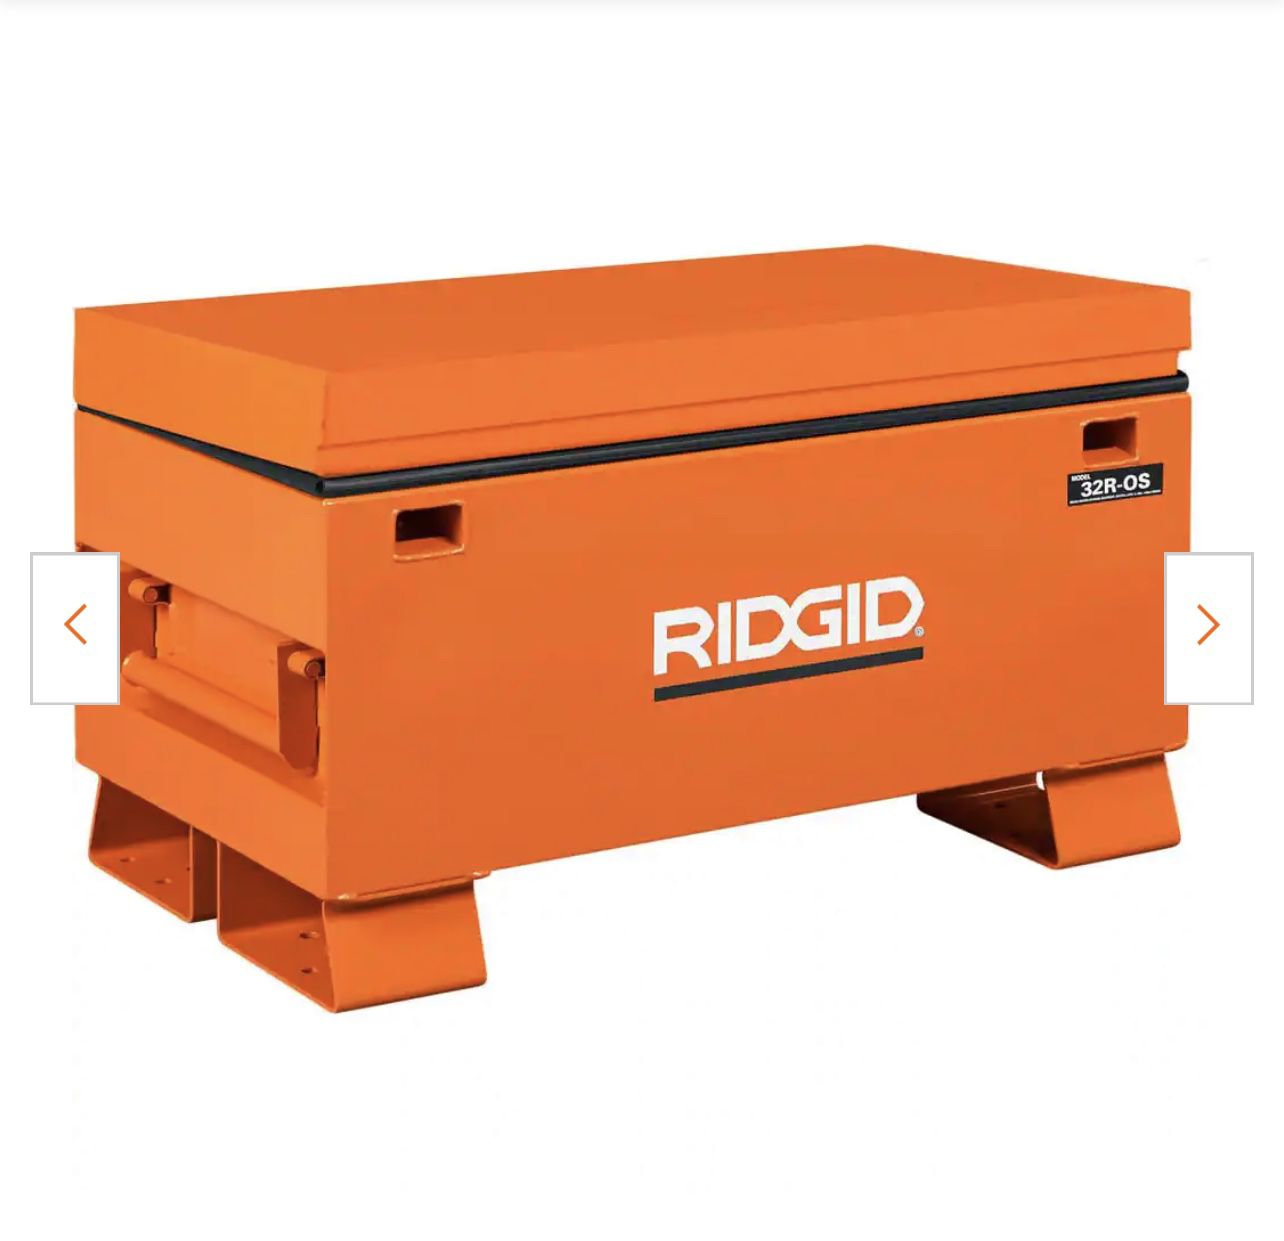 Rigid Jobsite Box